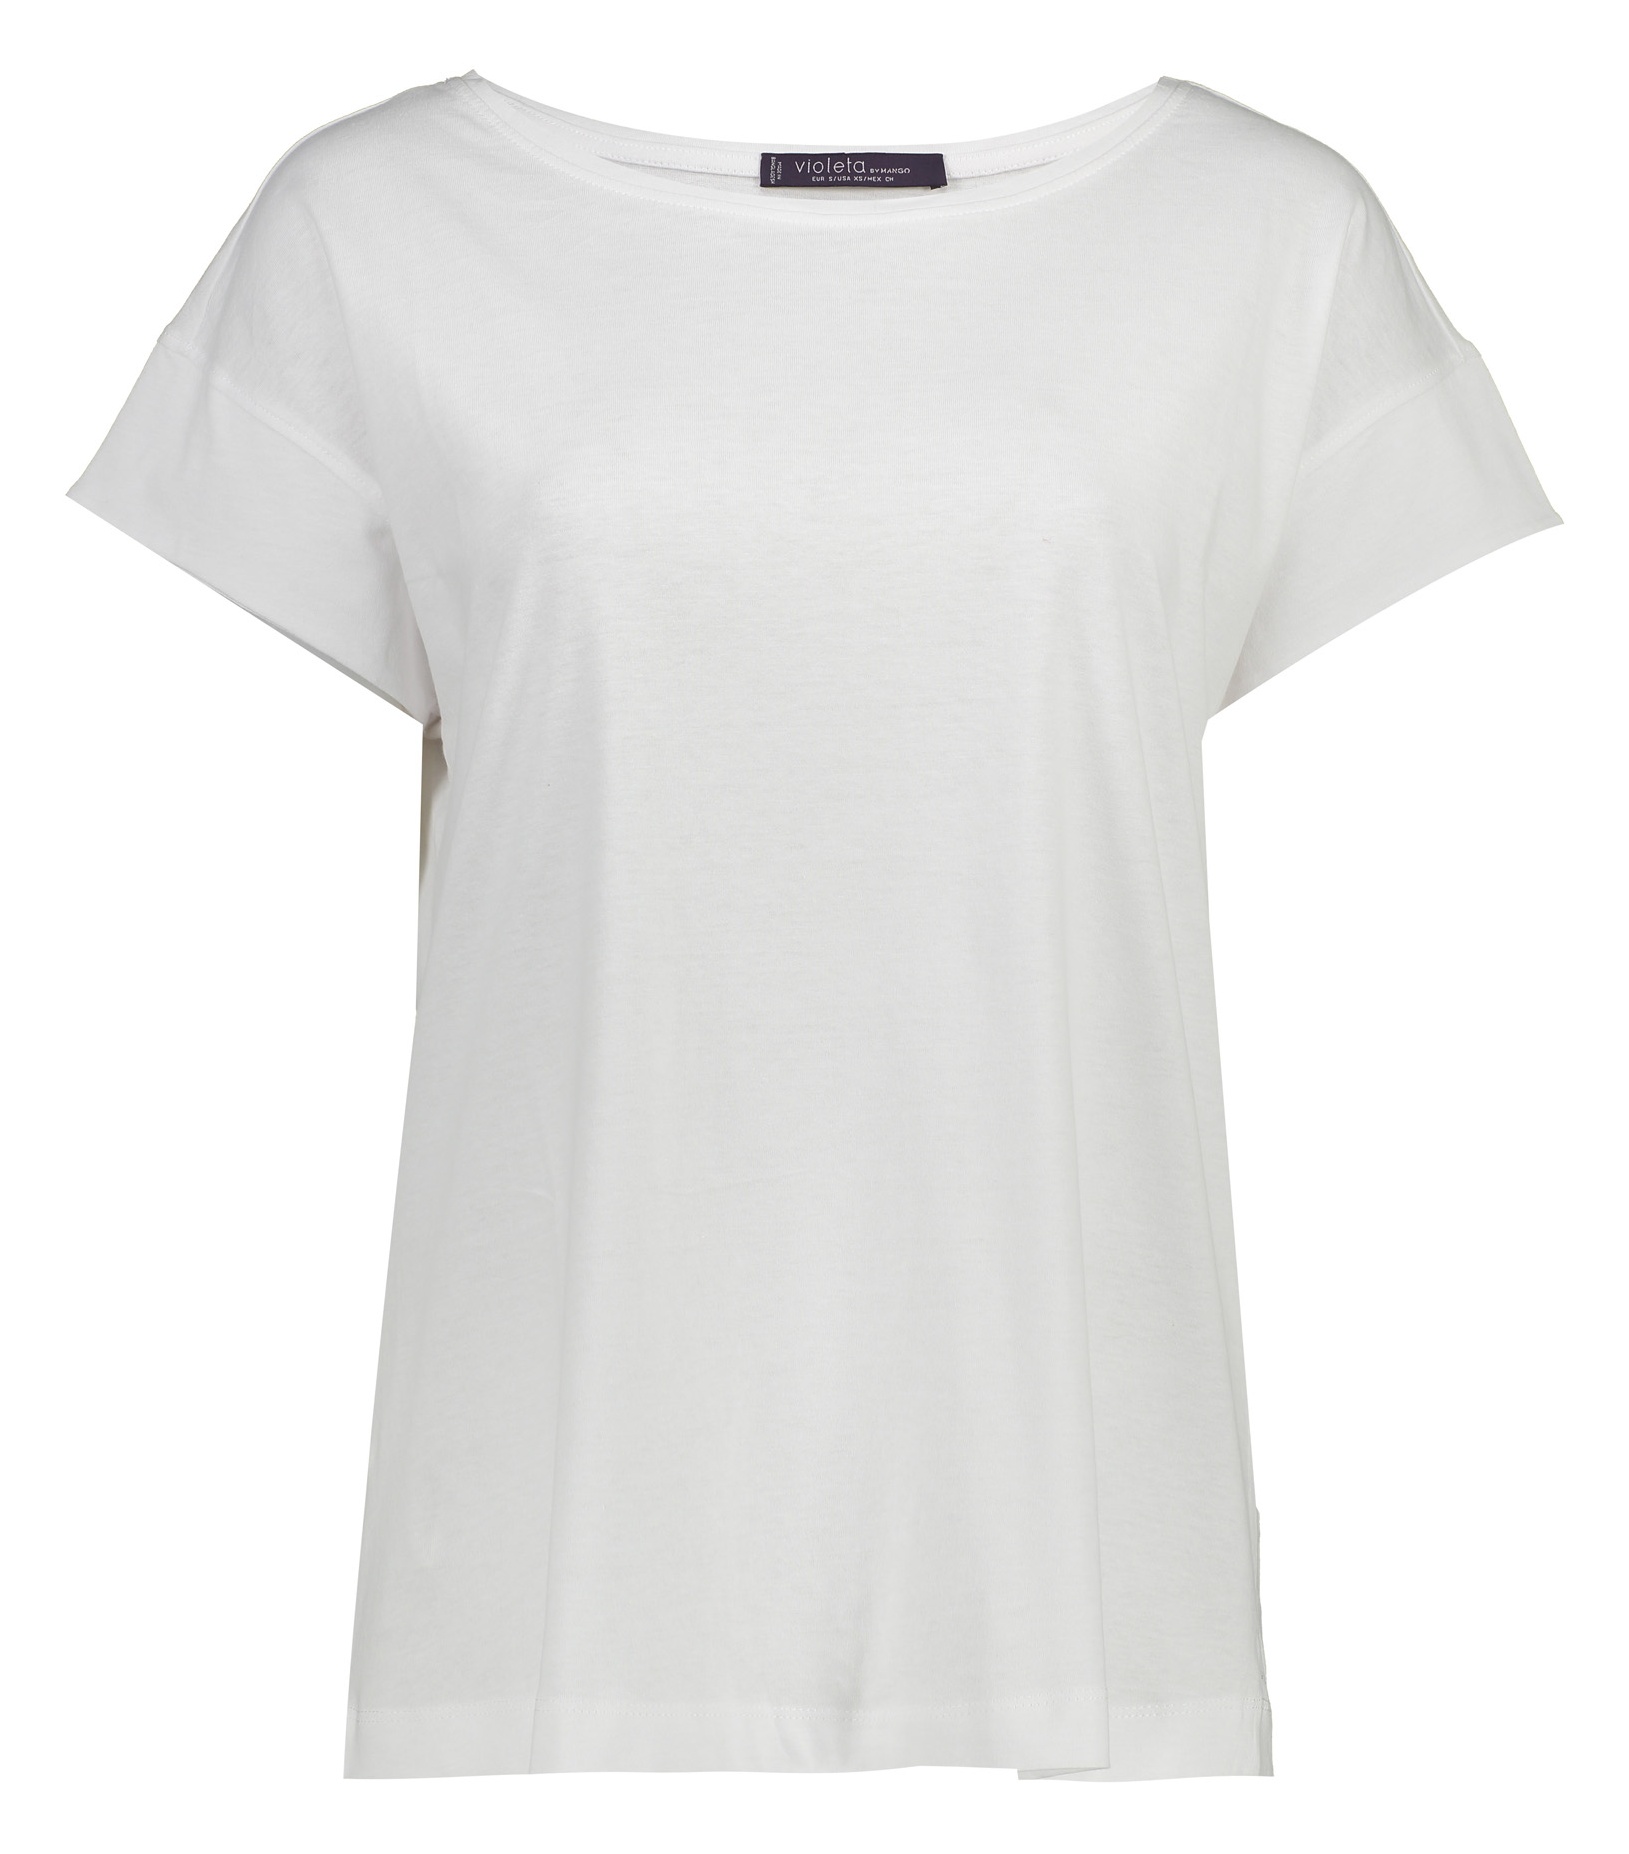 تی شرت نخی یقه گرد زنانه - ویولتا بای مانگو